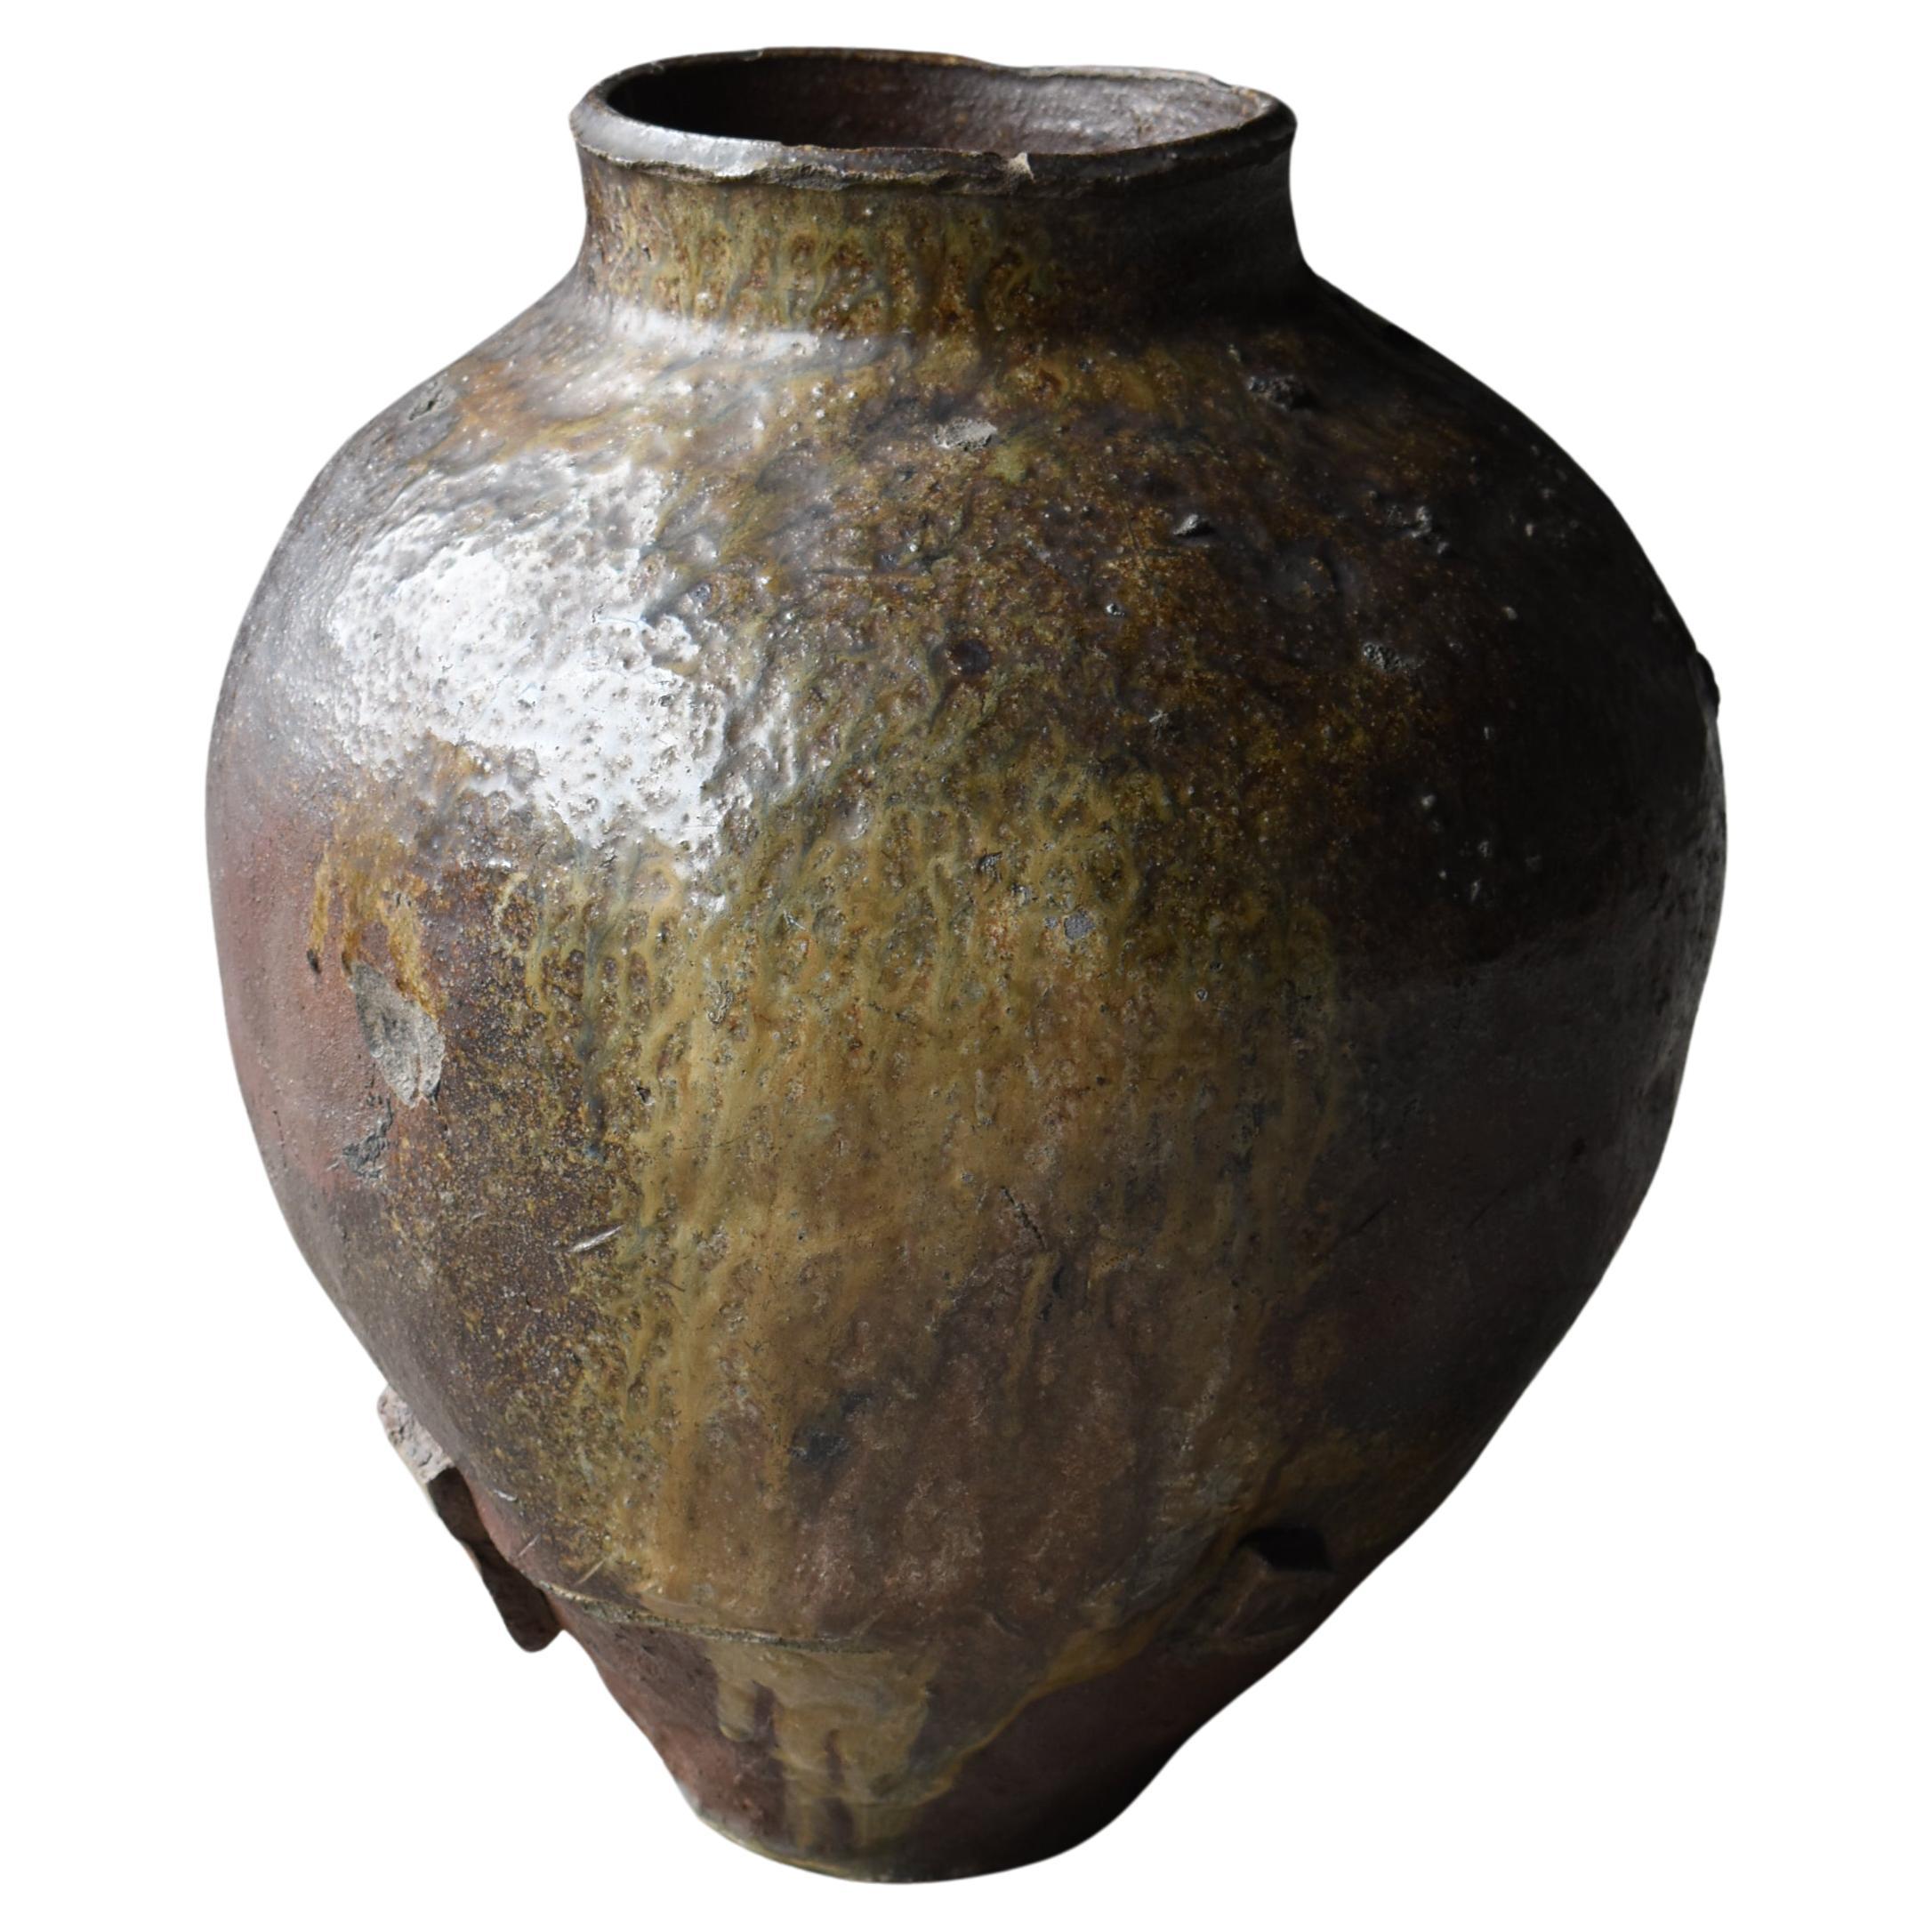 Japanese Antique Wabi Sabi Pottery Vase 1700s-1800s / Flower Vase Vessel Jar